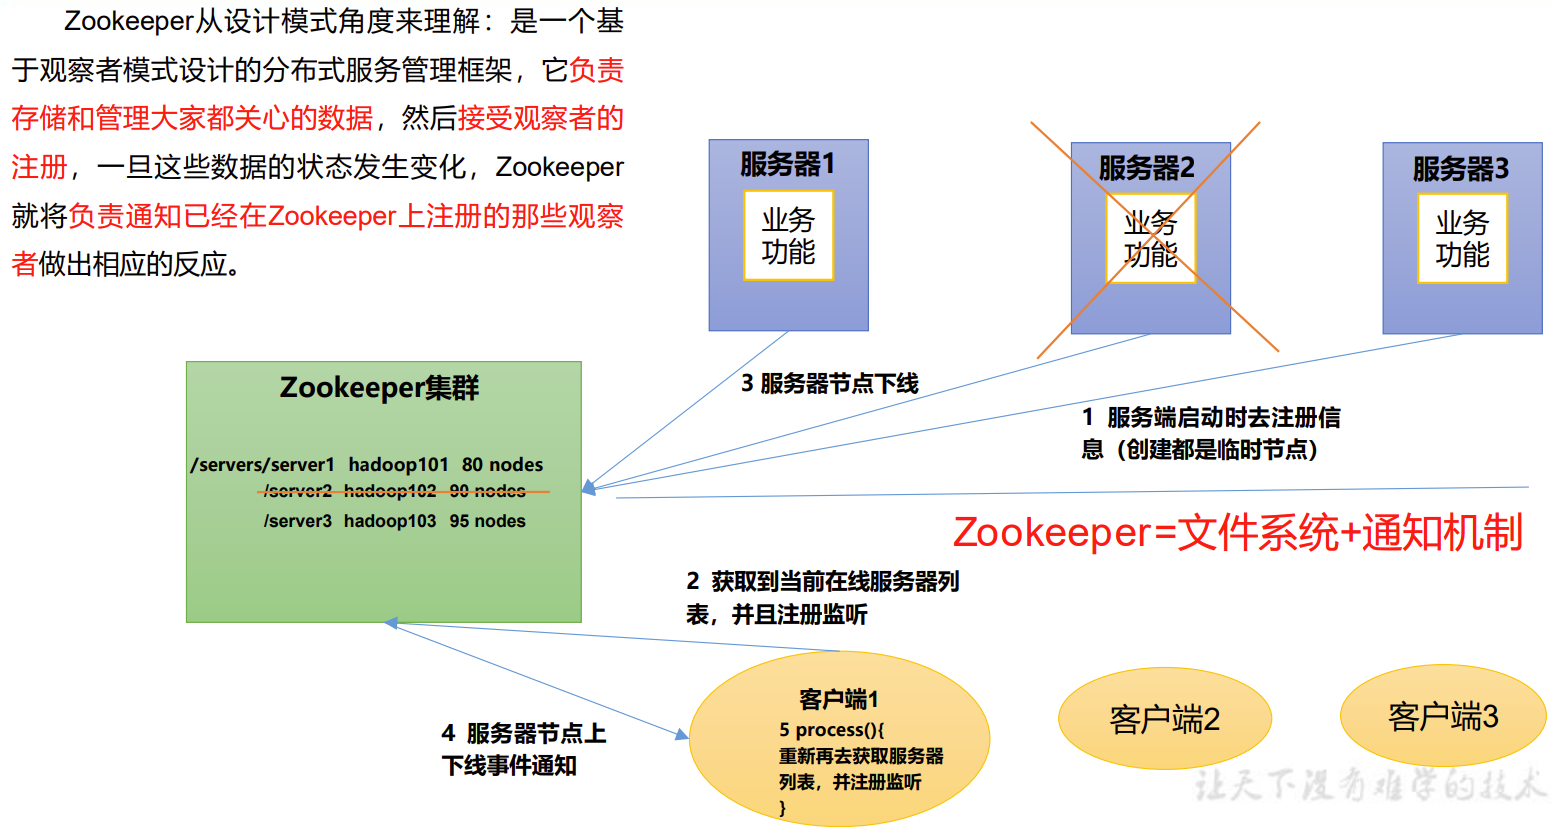 尚硅谷大数据技术Zookeeper教程-笔记01【Zookeeper(入门、本地安装、集群操作)】